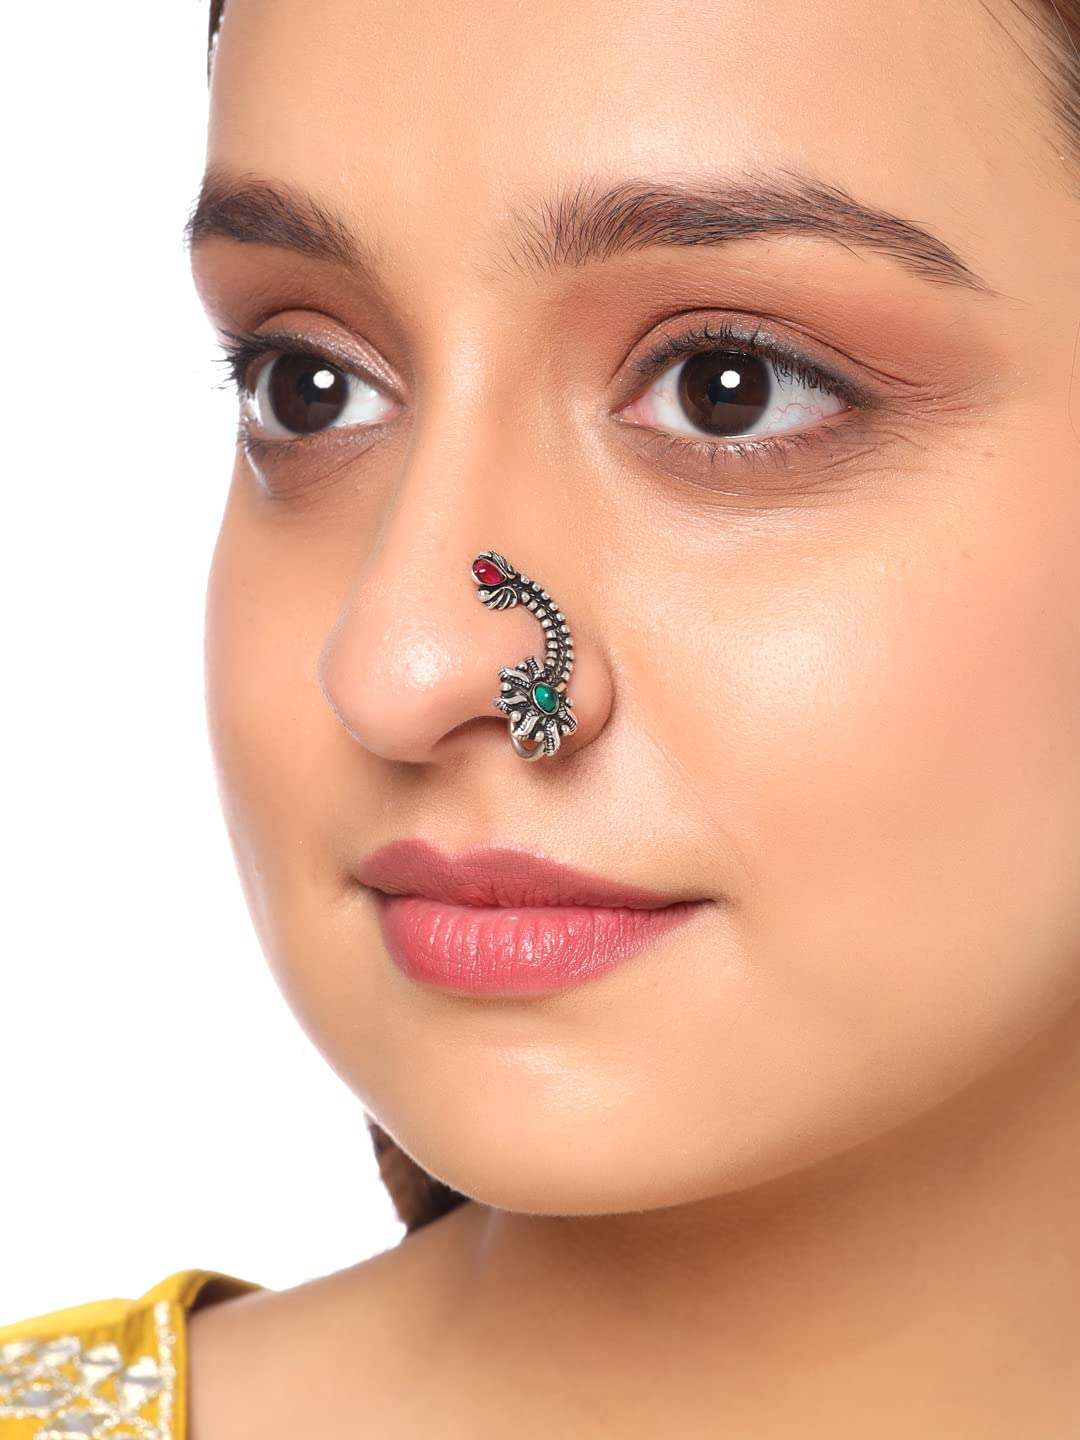 2 Large Oxidized Nose Ring/nath/marathi Nose Ring/boho Jewelry/no Piercing/ nose Clip/nose Ring/nose Ring/maharashtrian Nath/left Side - Etsy